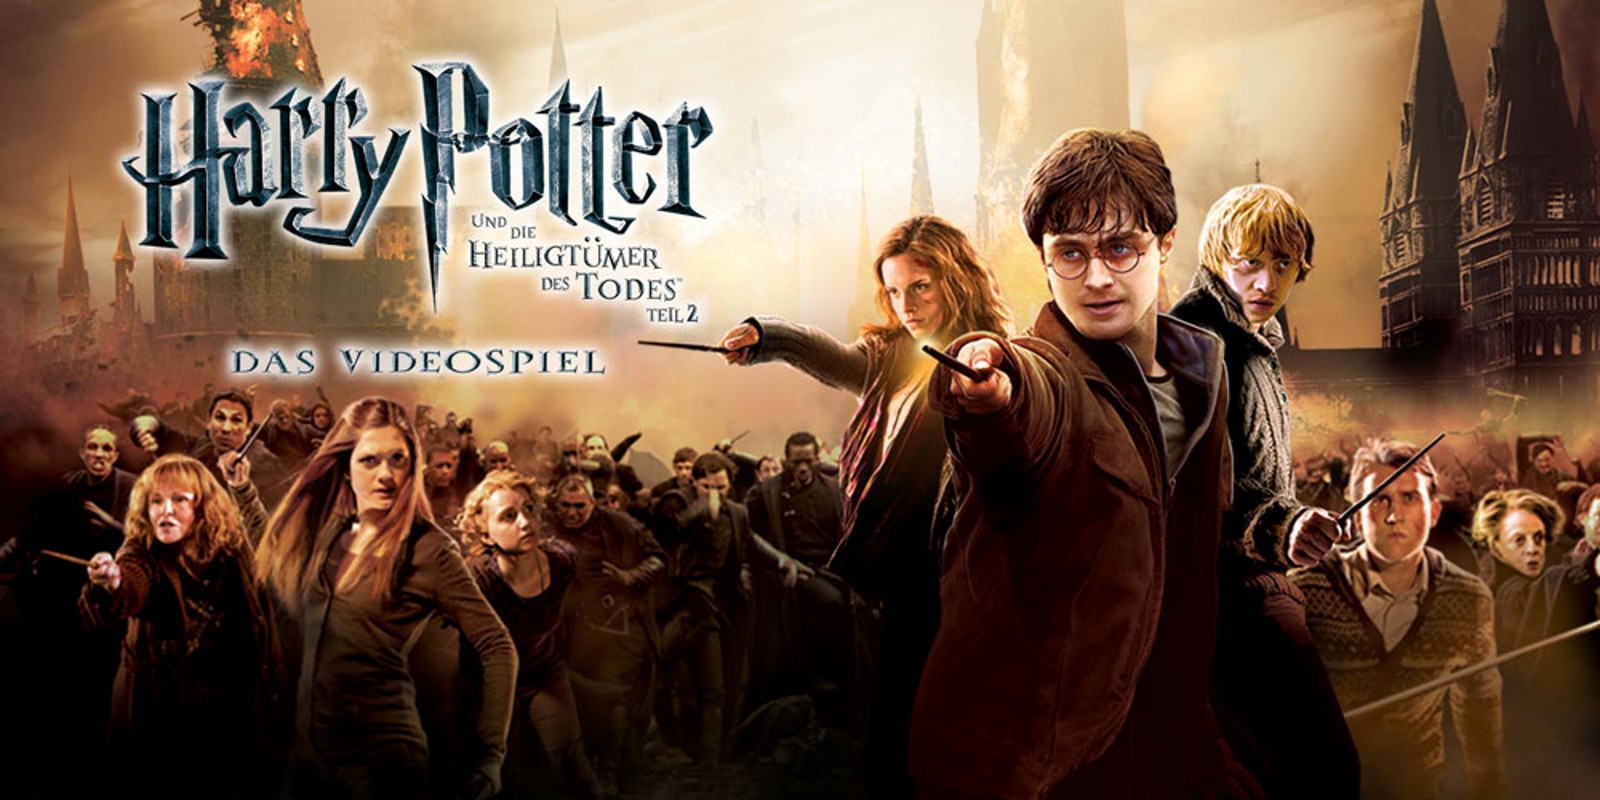 Harry Potter und die Heiligtümer des Todes™ - Teil 2